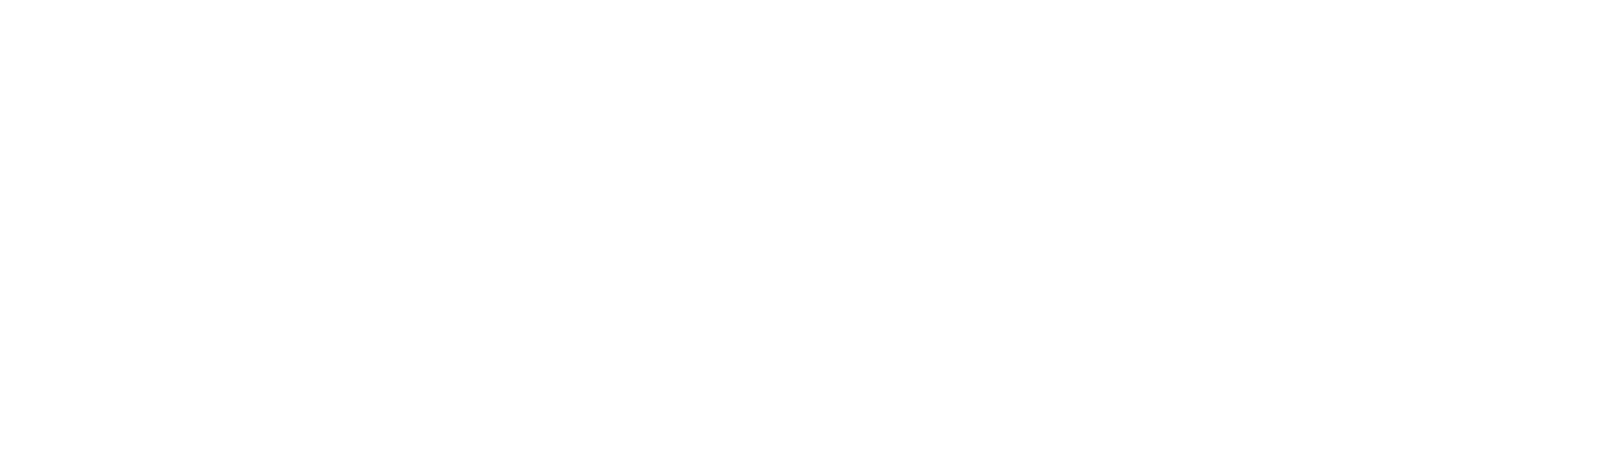 Hi-Tech Education Waves 